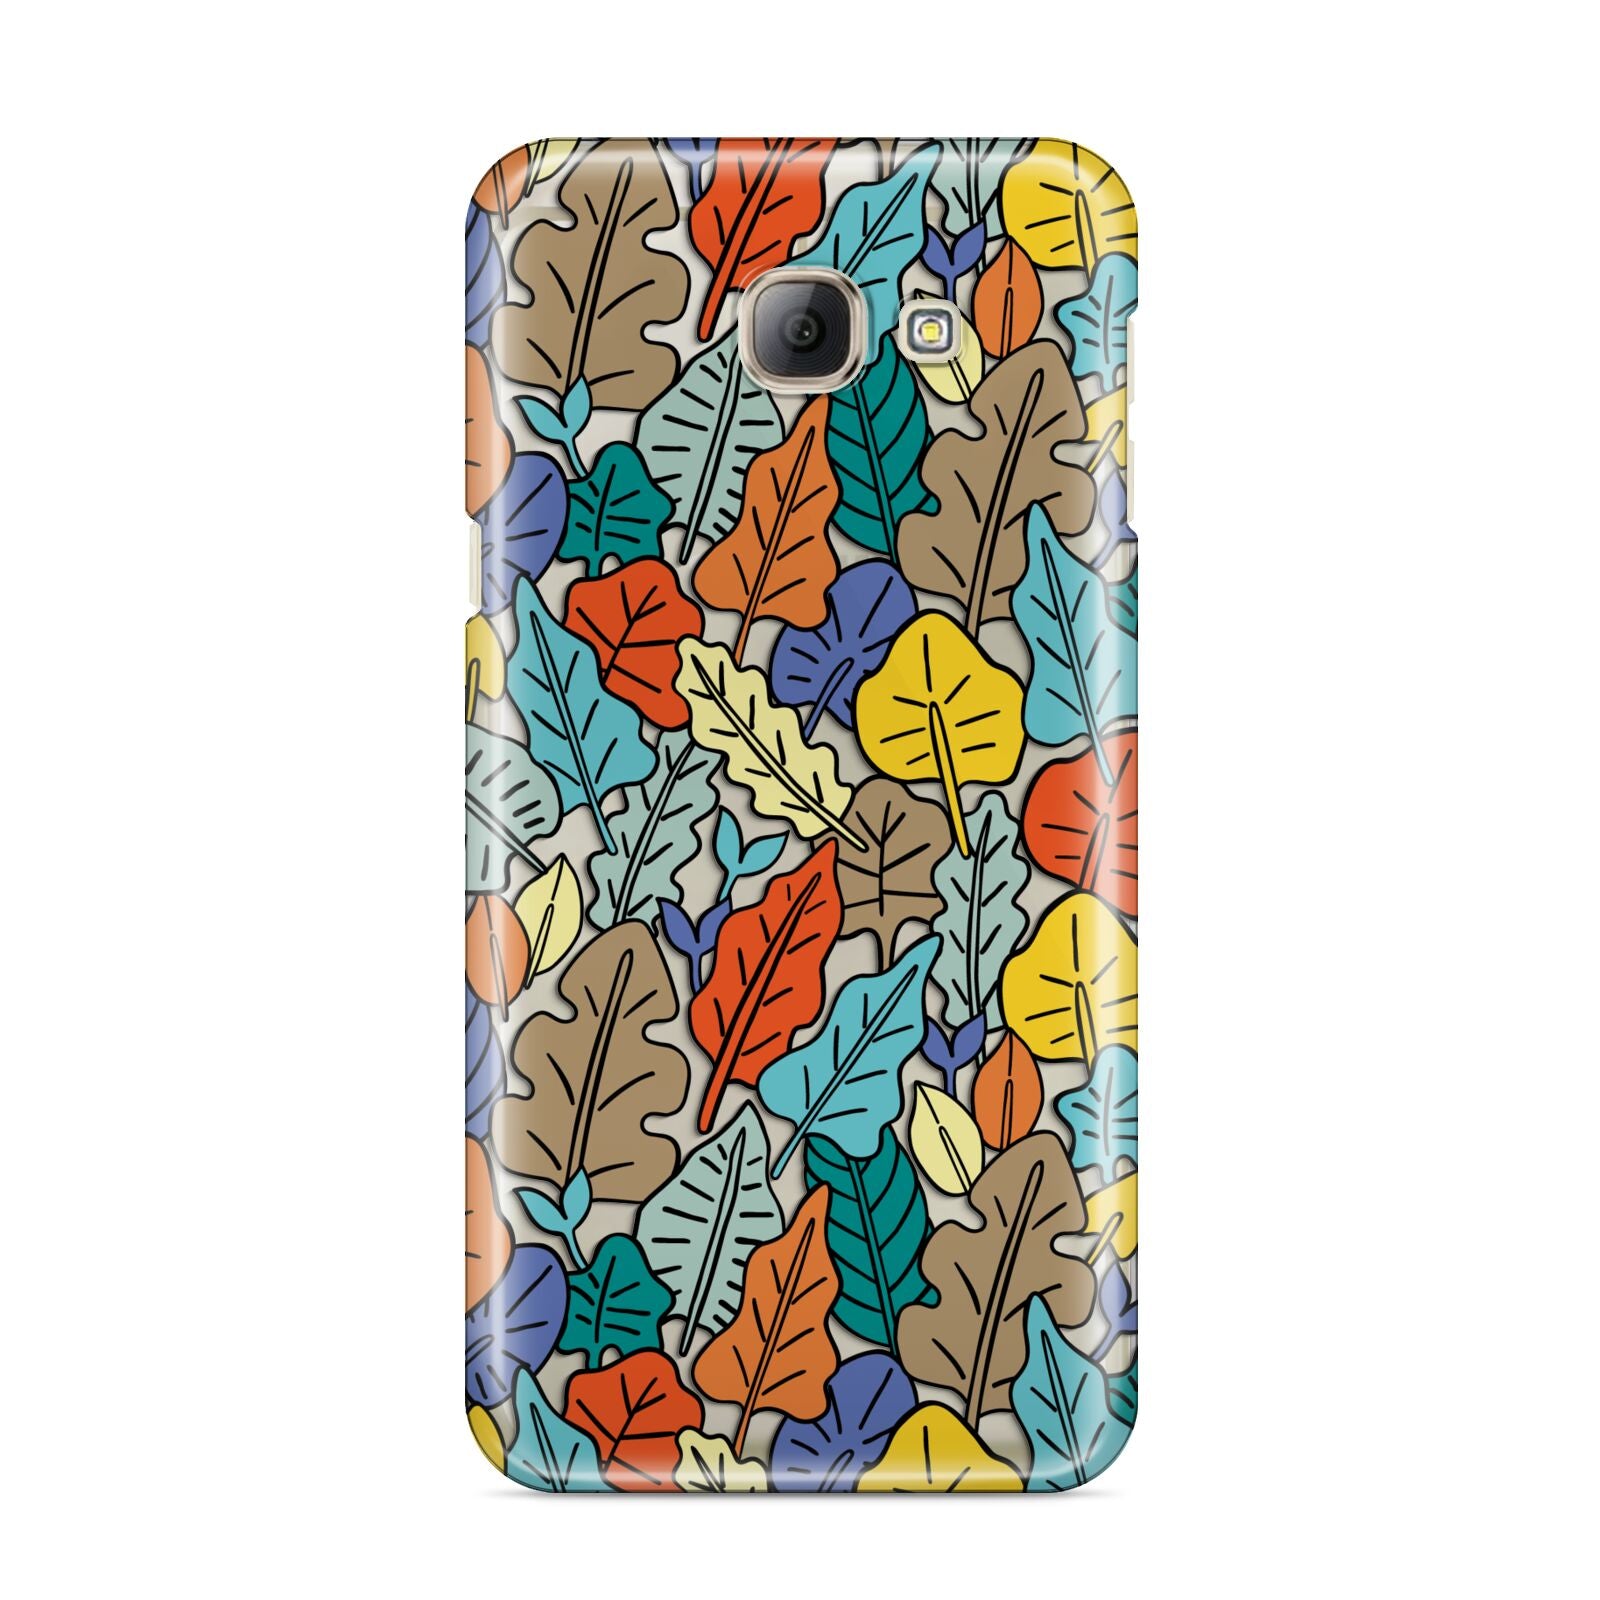 Autumn Leaves Samsung Galaxy A8 2016 Case